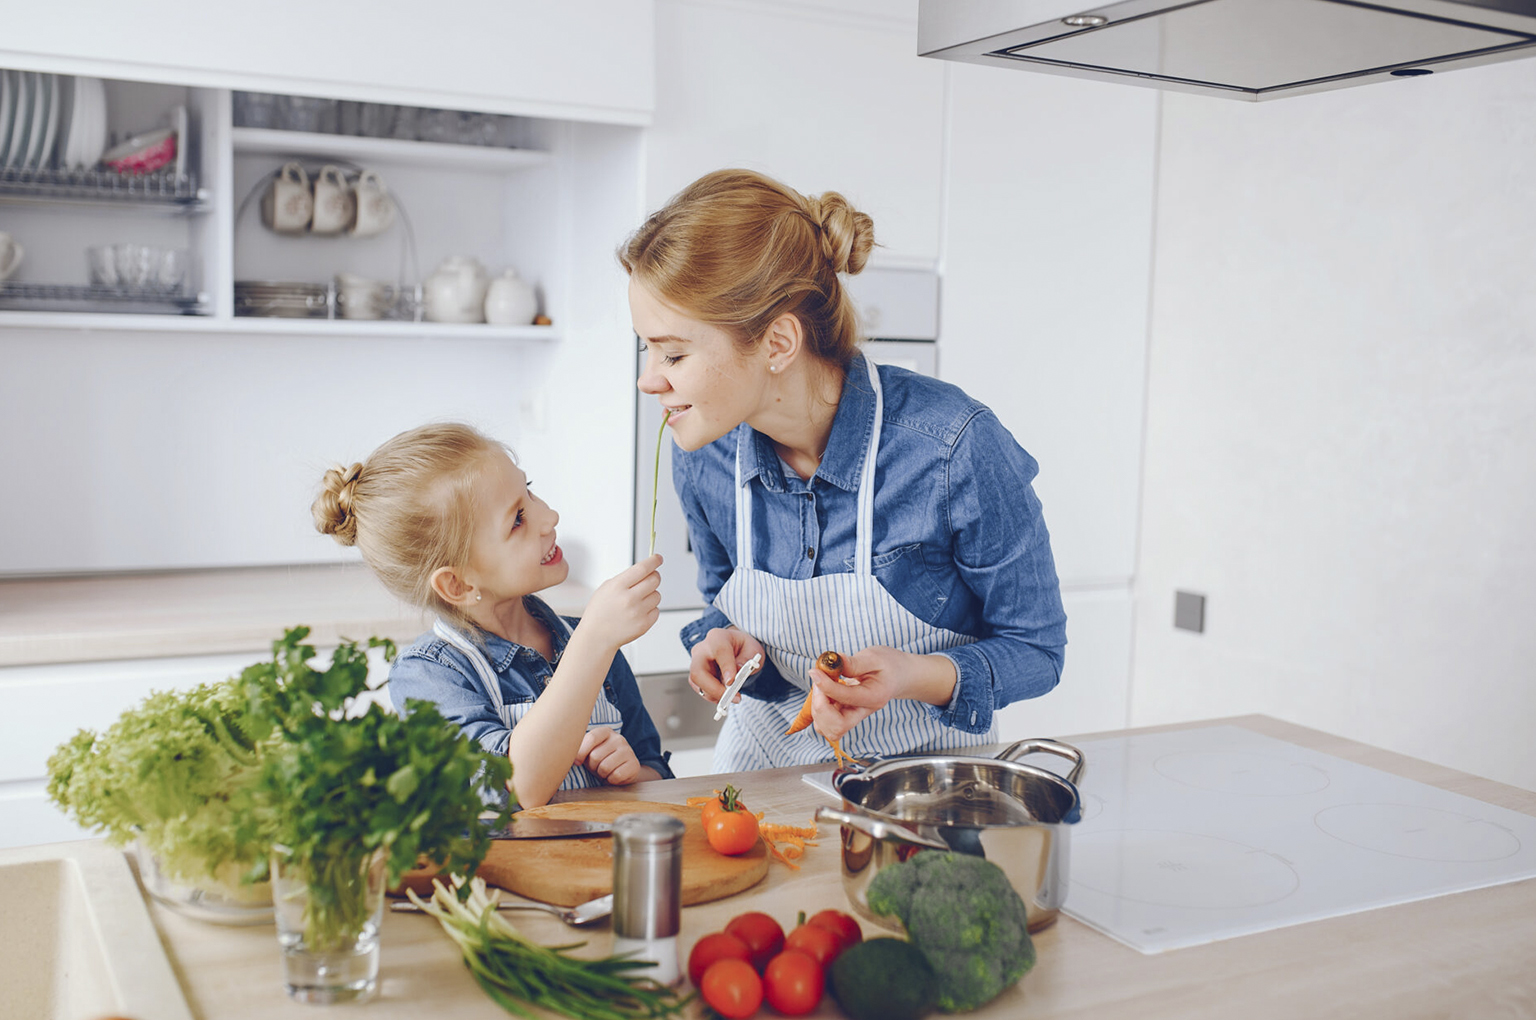 Matka w niebieskiej koszuli przygotowuje sałatkę wraz z córką